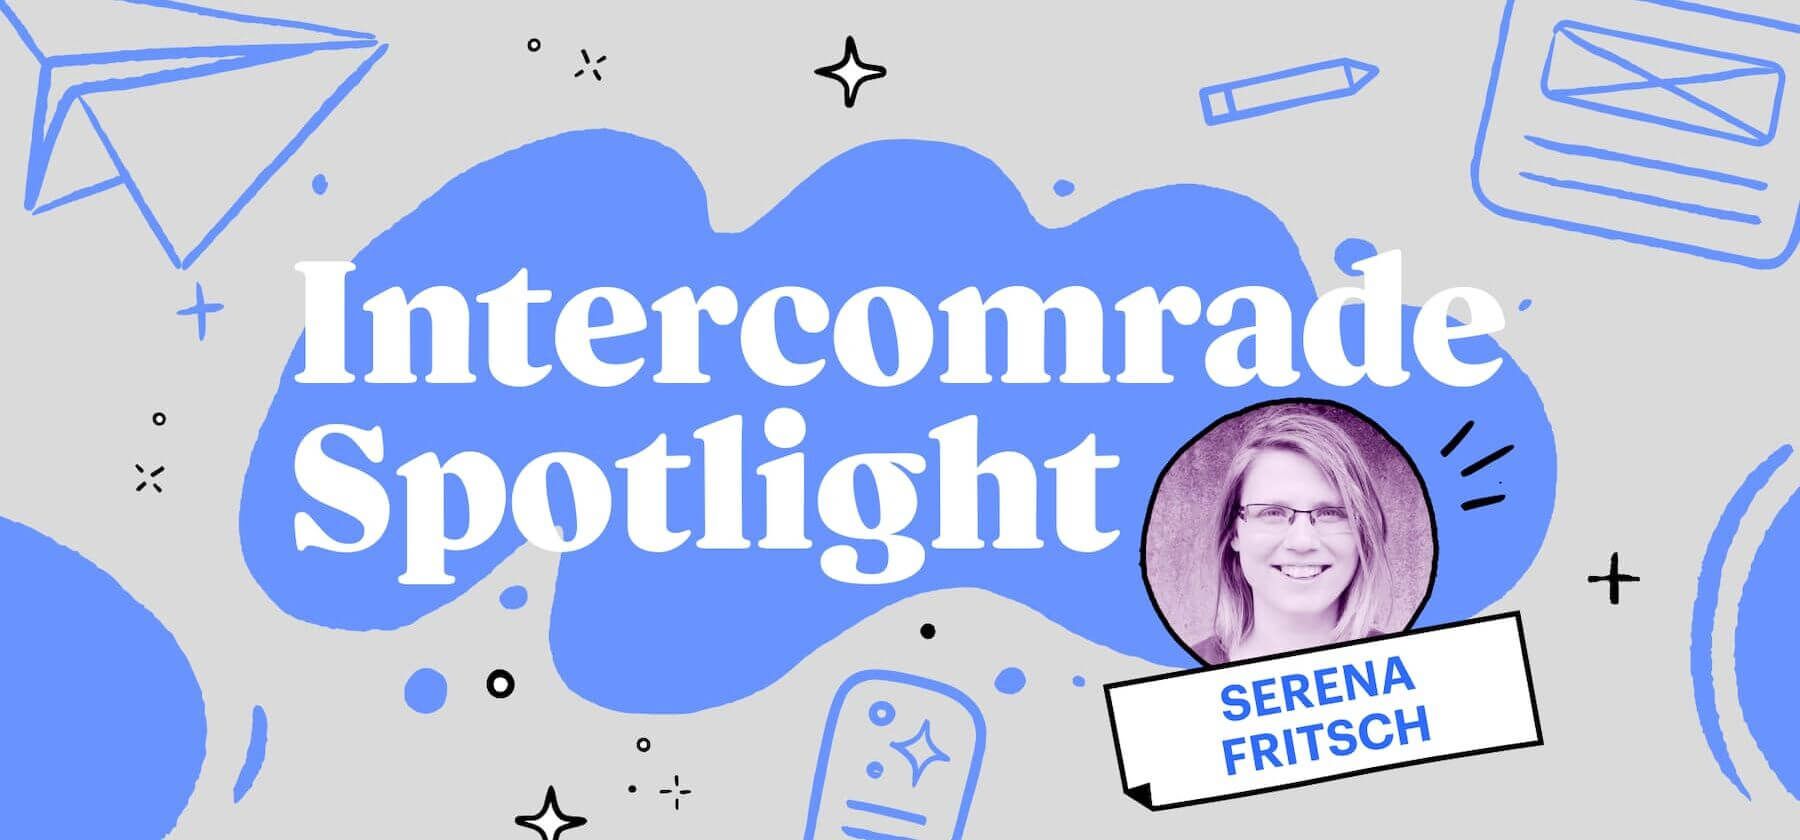 Intercomrade Spotlight - Serena Fritsch